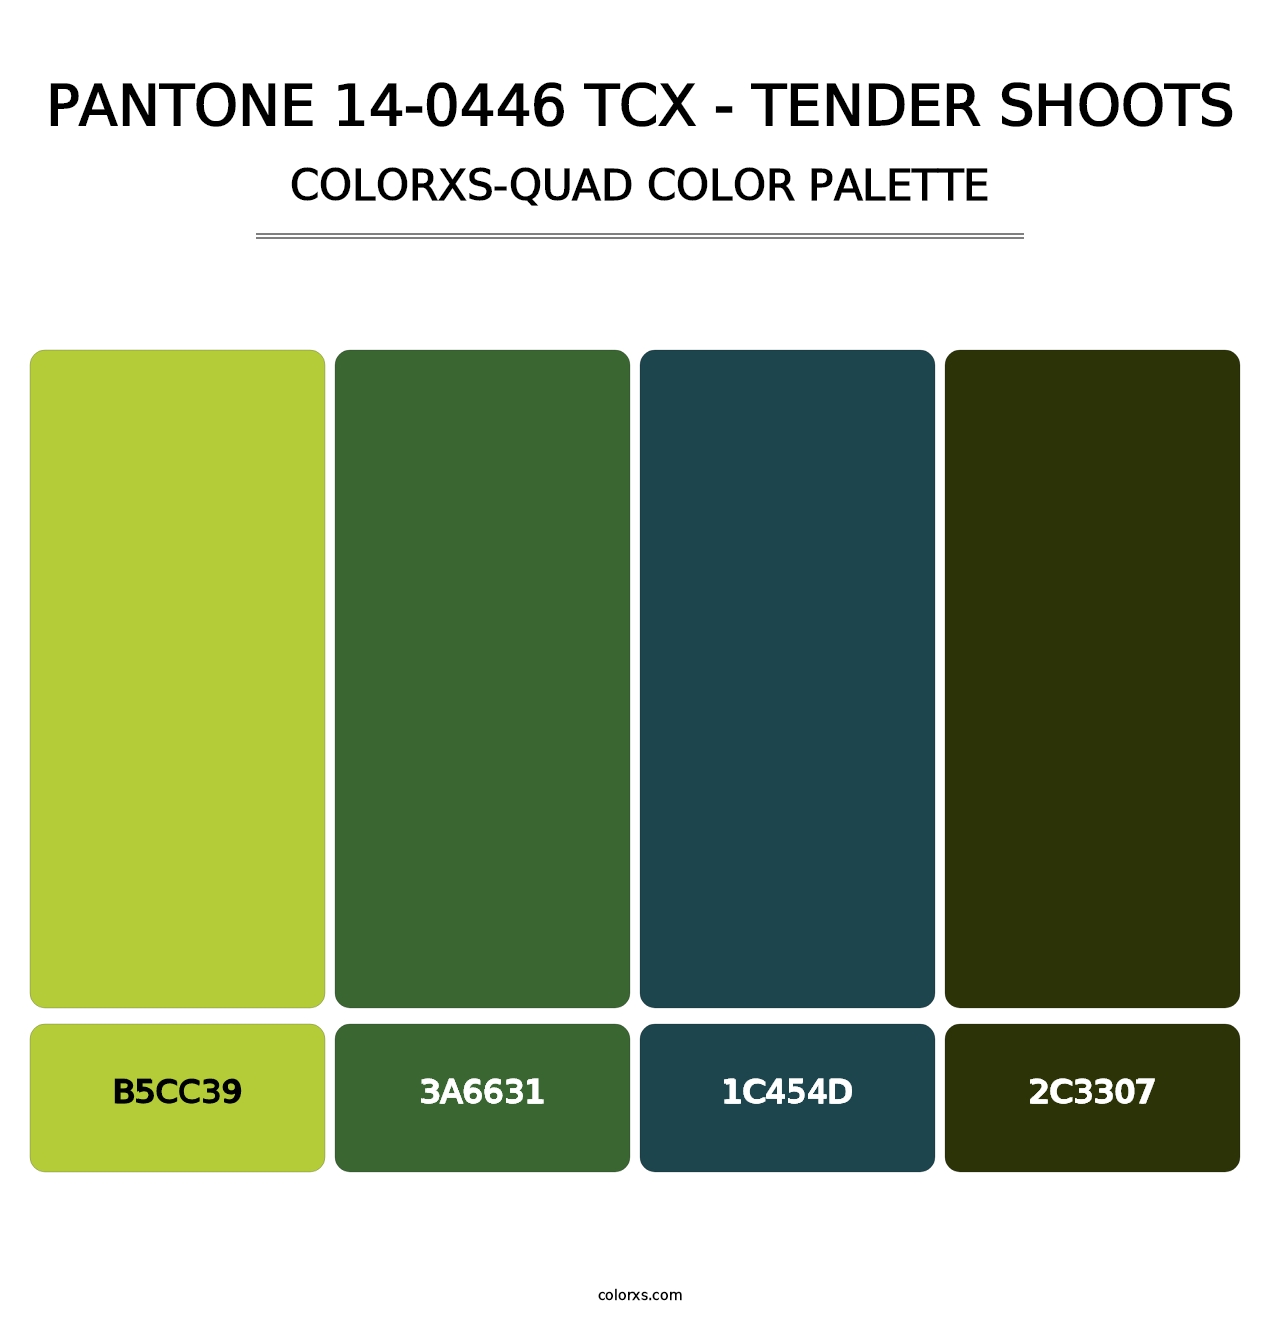 PANTONE 14-0446 TCX - Tender Shoots - Colorxs Quad Palette